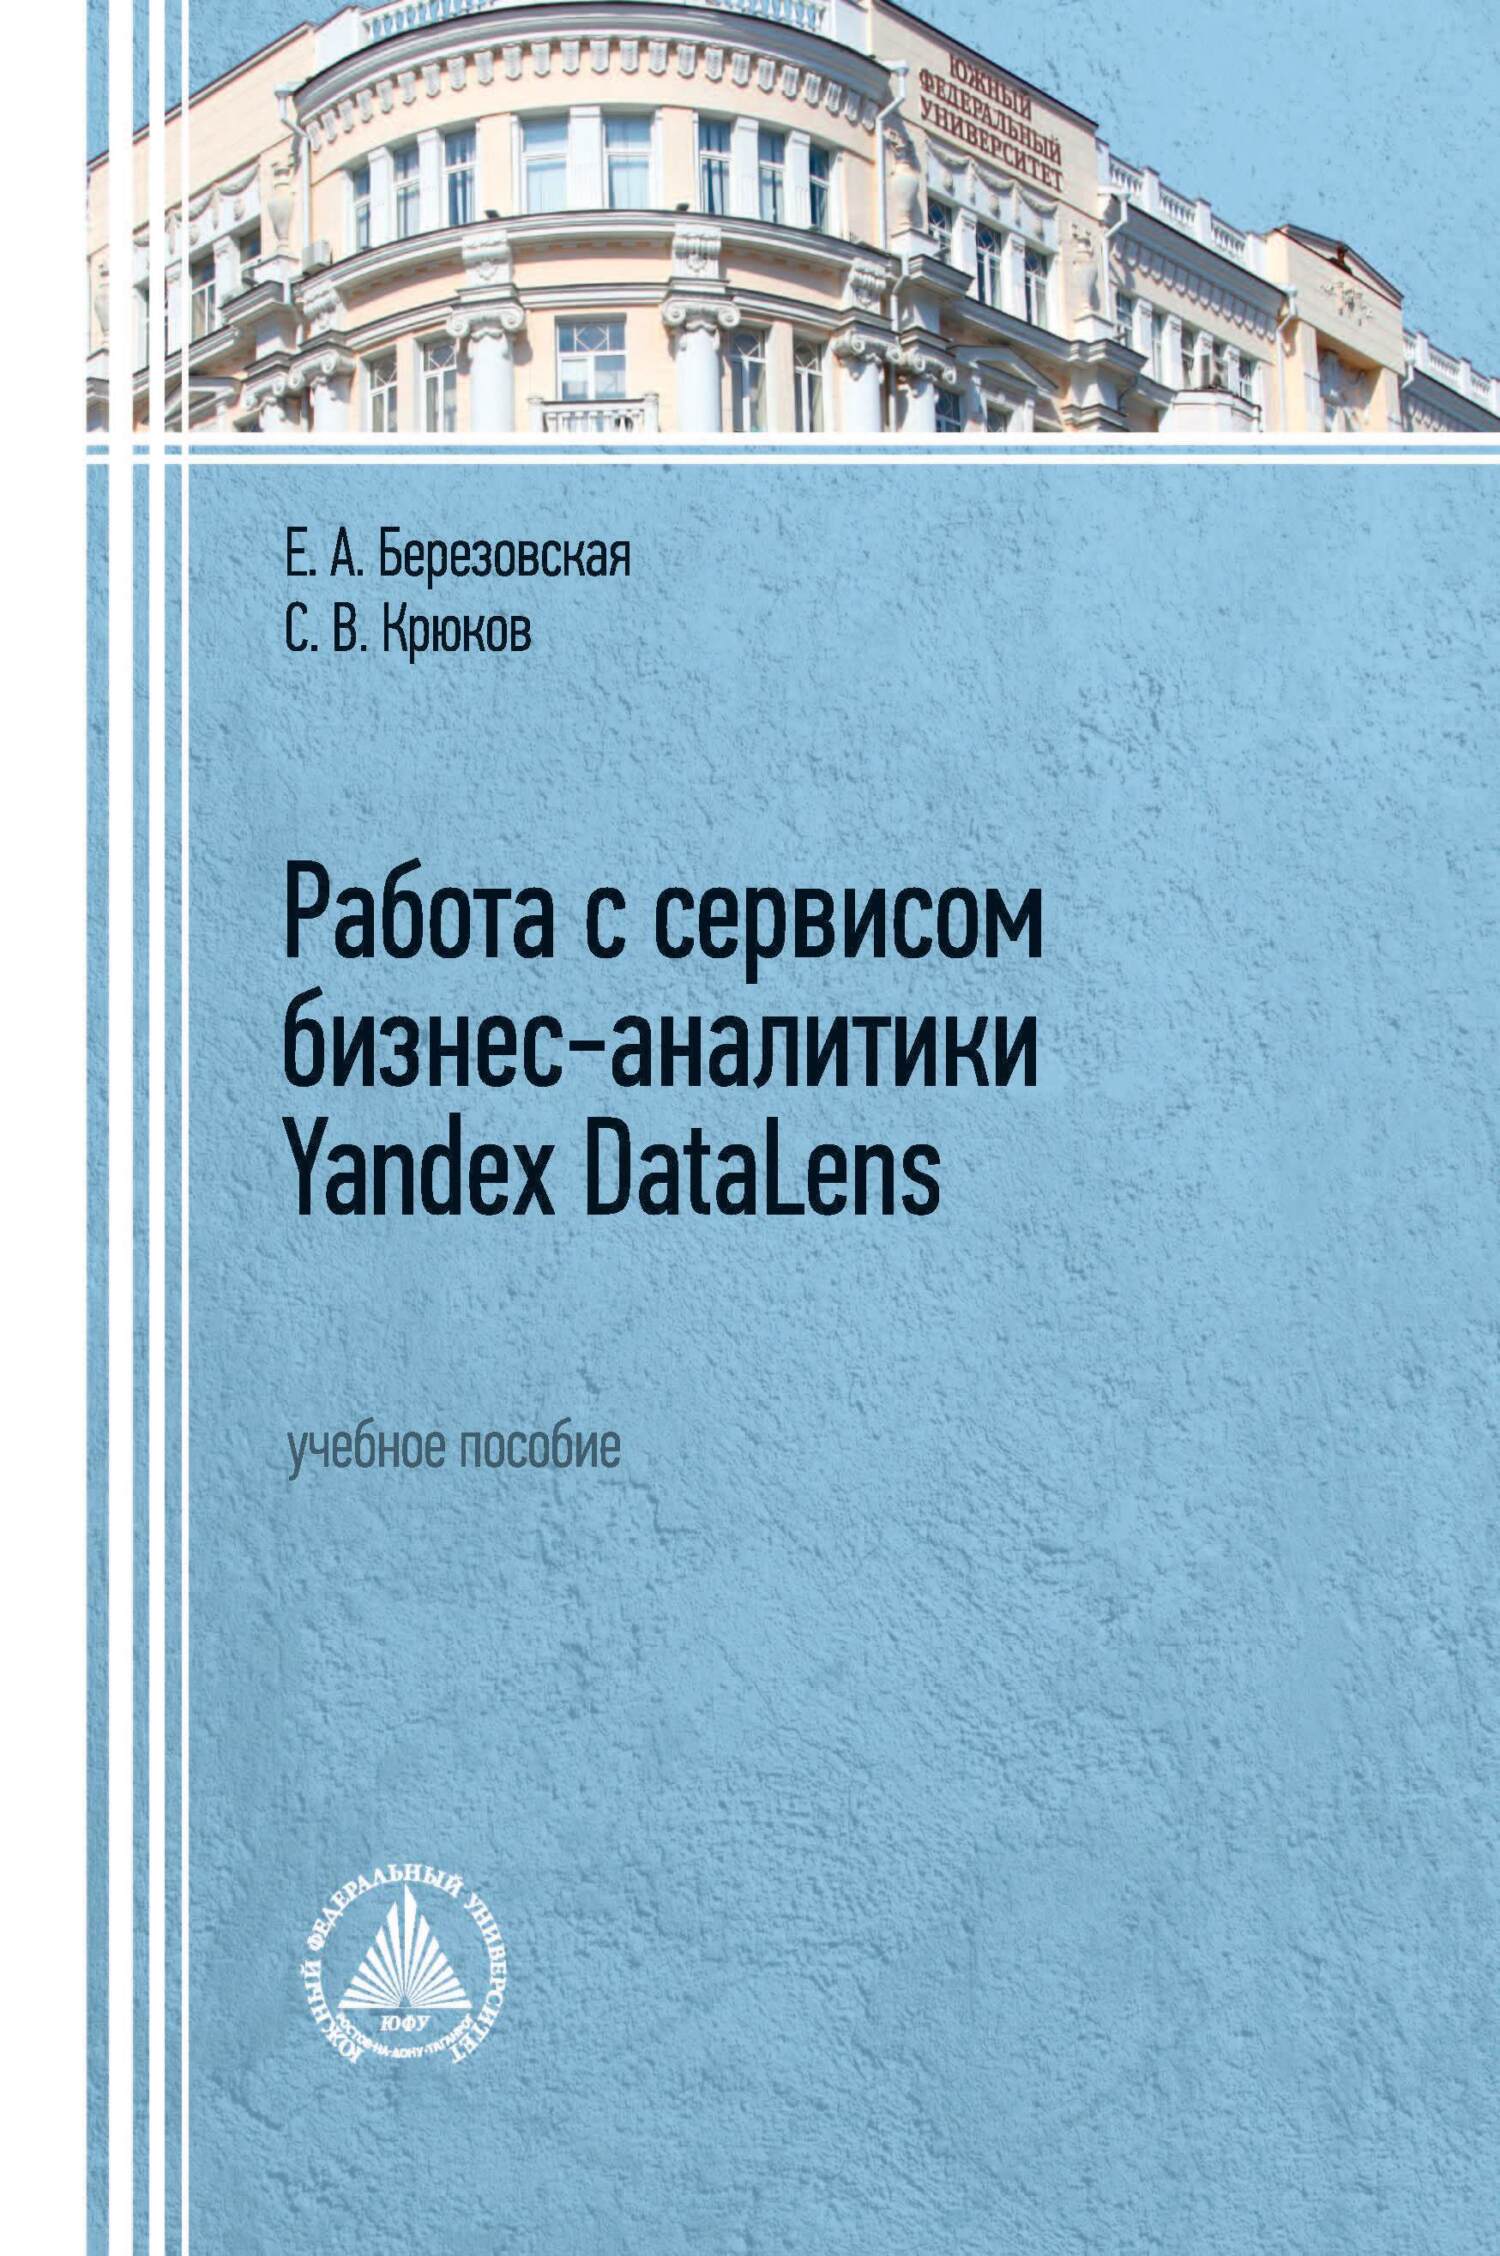 Книга  Работа с сервисом бизнес-аналитики Yandex DataLens созданная С. В. Крюков, Е. А. Березовская может относится к жанру программы, учебники и пособия для вузов. Стоимость электронной книги Работа с сервисом бизнес-аналитики Yandex DataLens с идентификатором 68743938 составляет 138.00 руб.